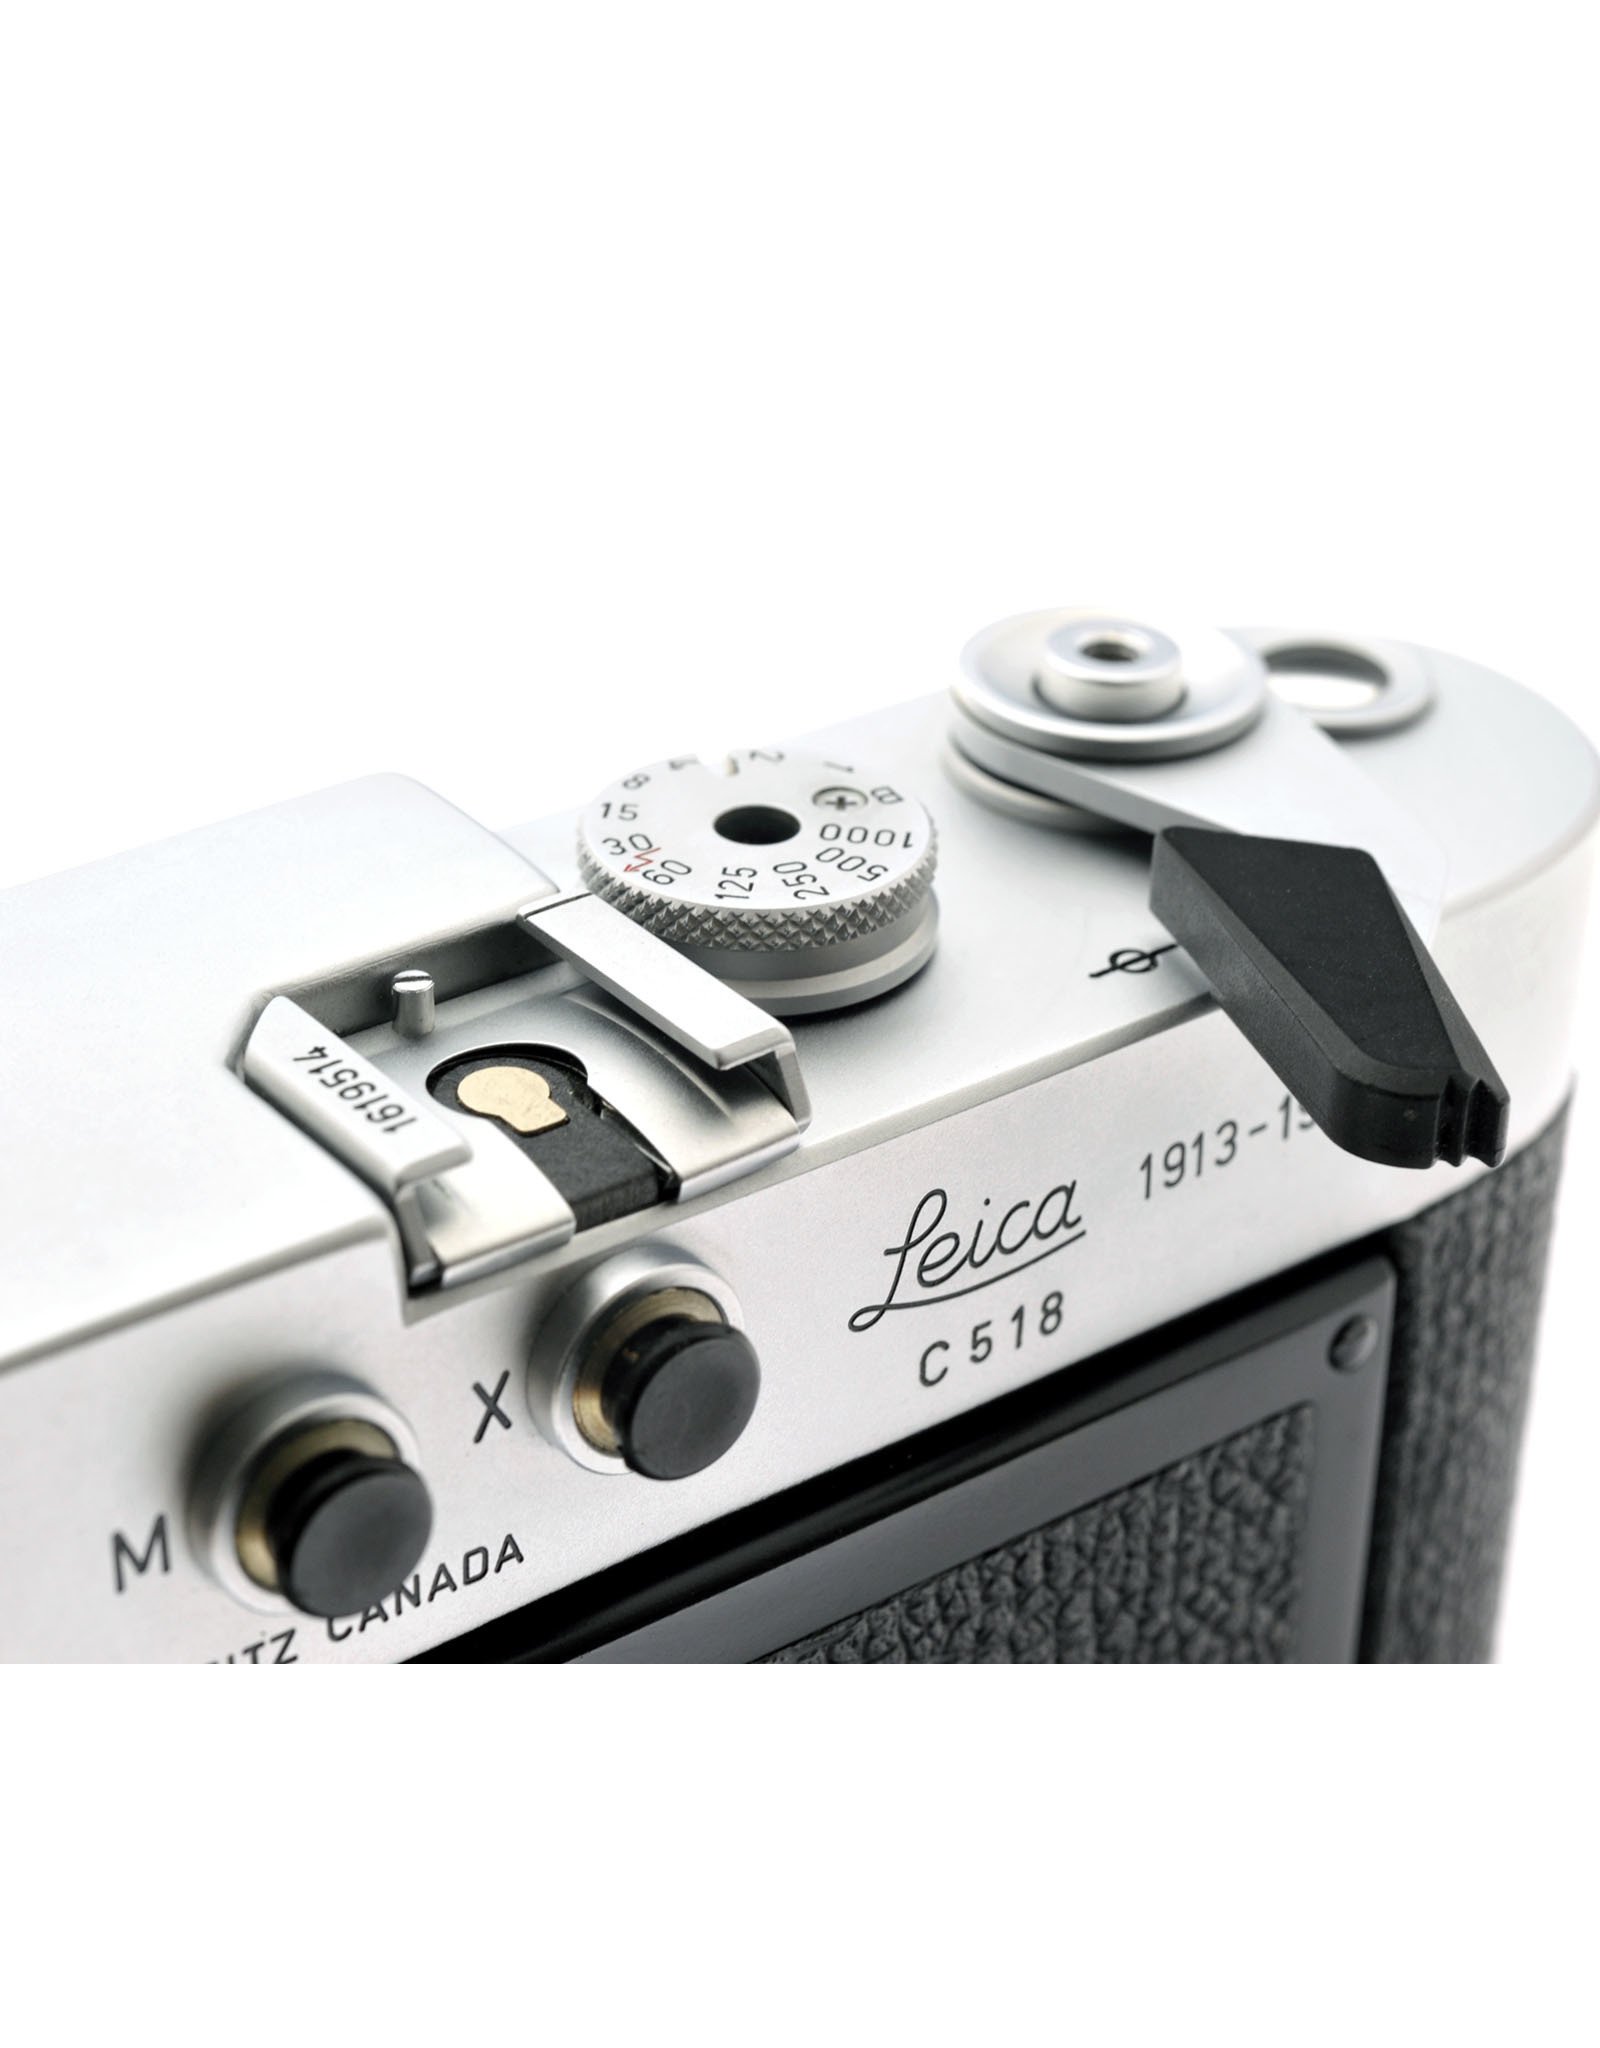 Leica Leica M4-P 70 yrs Anniversary Edition (1913-1983)(C518)   A2032304